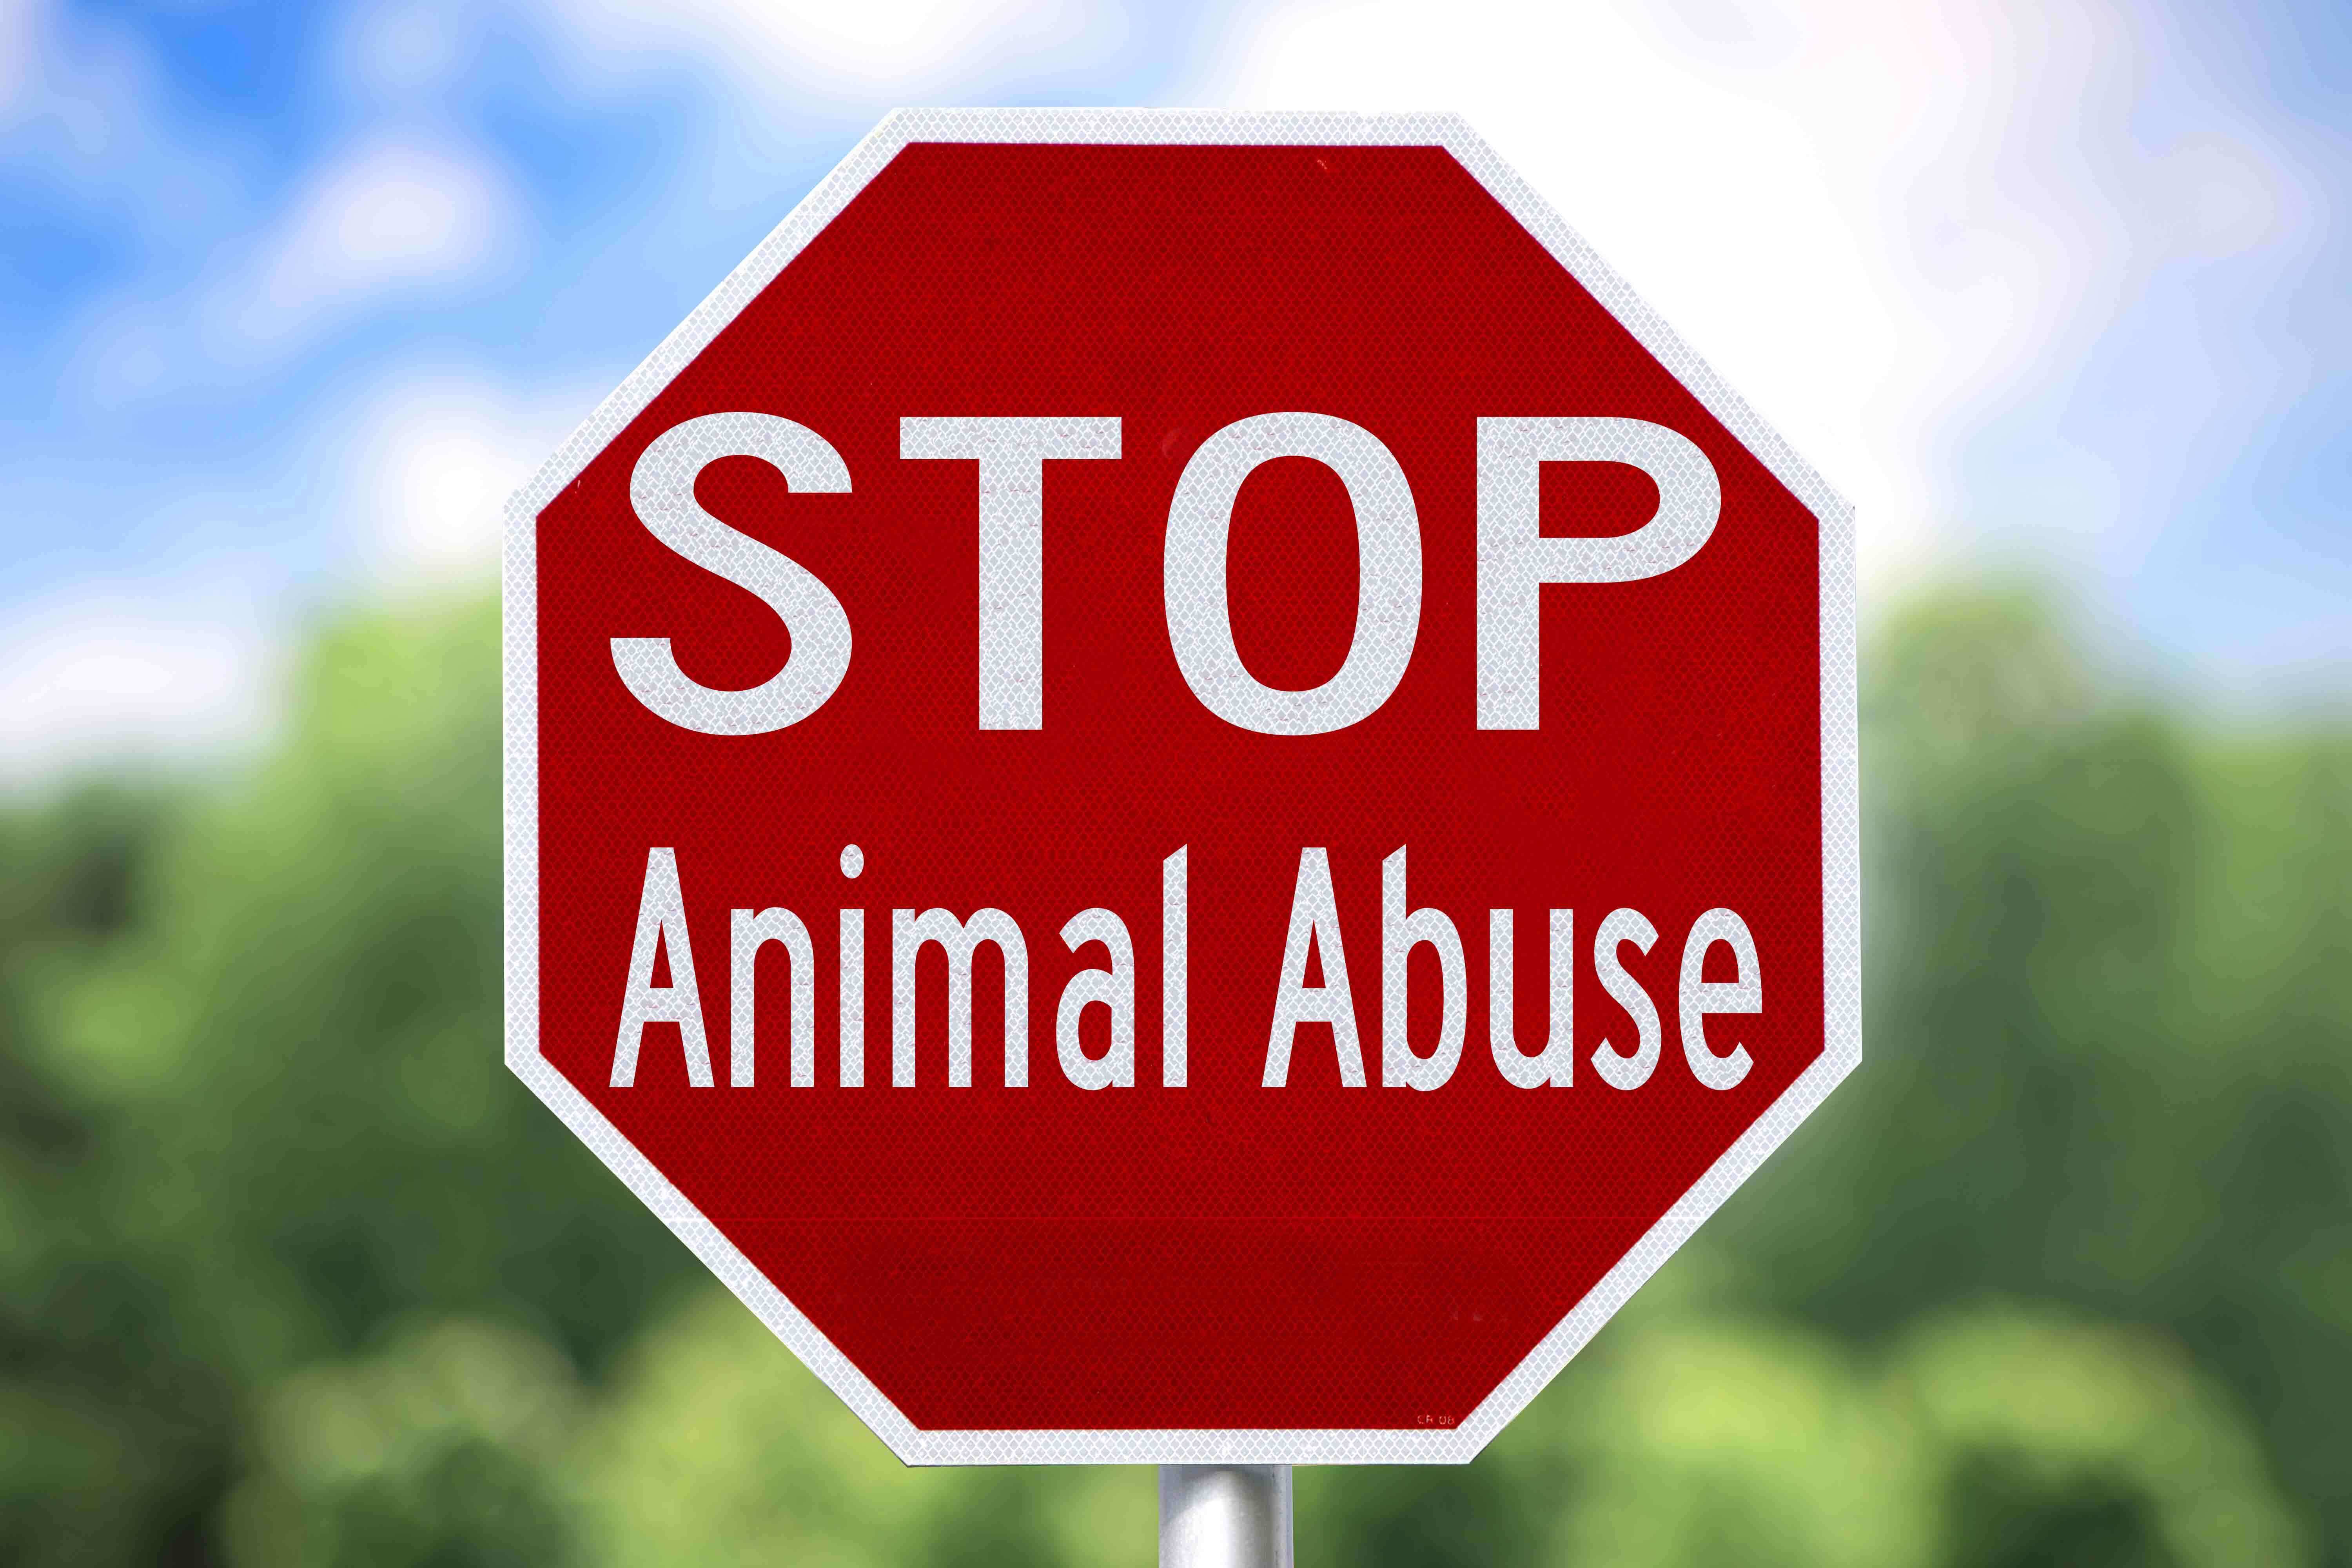 Luta pelo fim do abusos contra animais